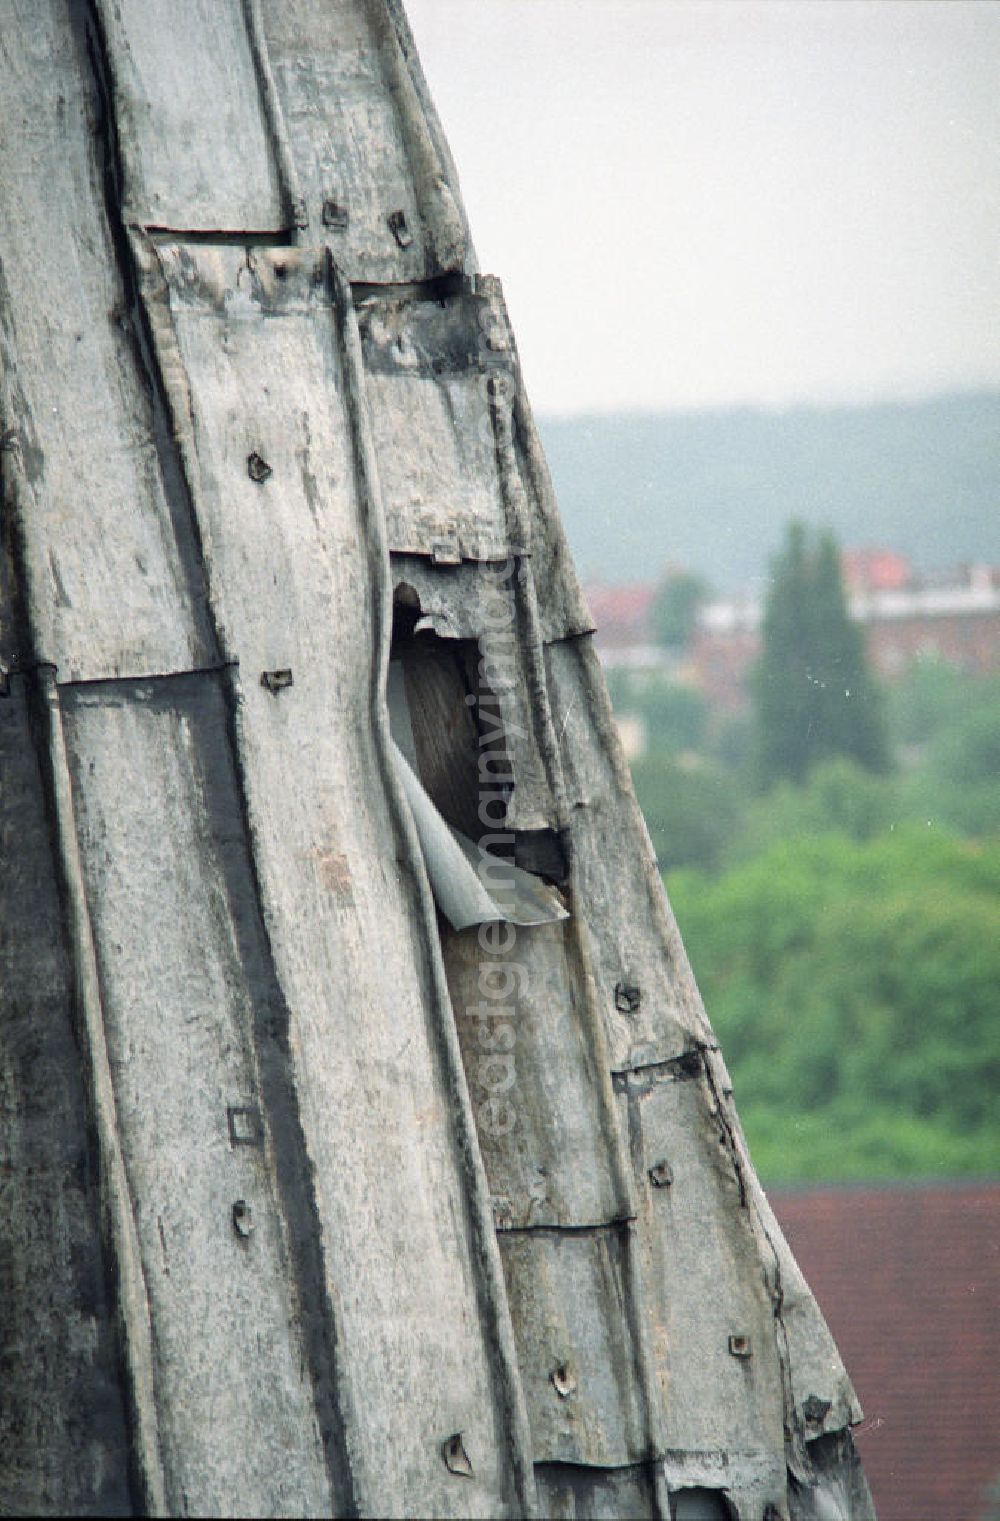 GDR image archive: Halberstadt - Arbeiten am nördlichen Turm der beiden Osttürme der Liebfrauenkirche. Die Liebfrauenkirche ist die einzige viertürmige romanische Basilika Mitteldeutschlands. 2005 beging sie ihre 100